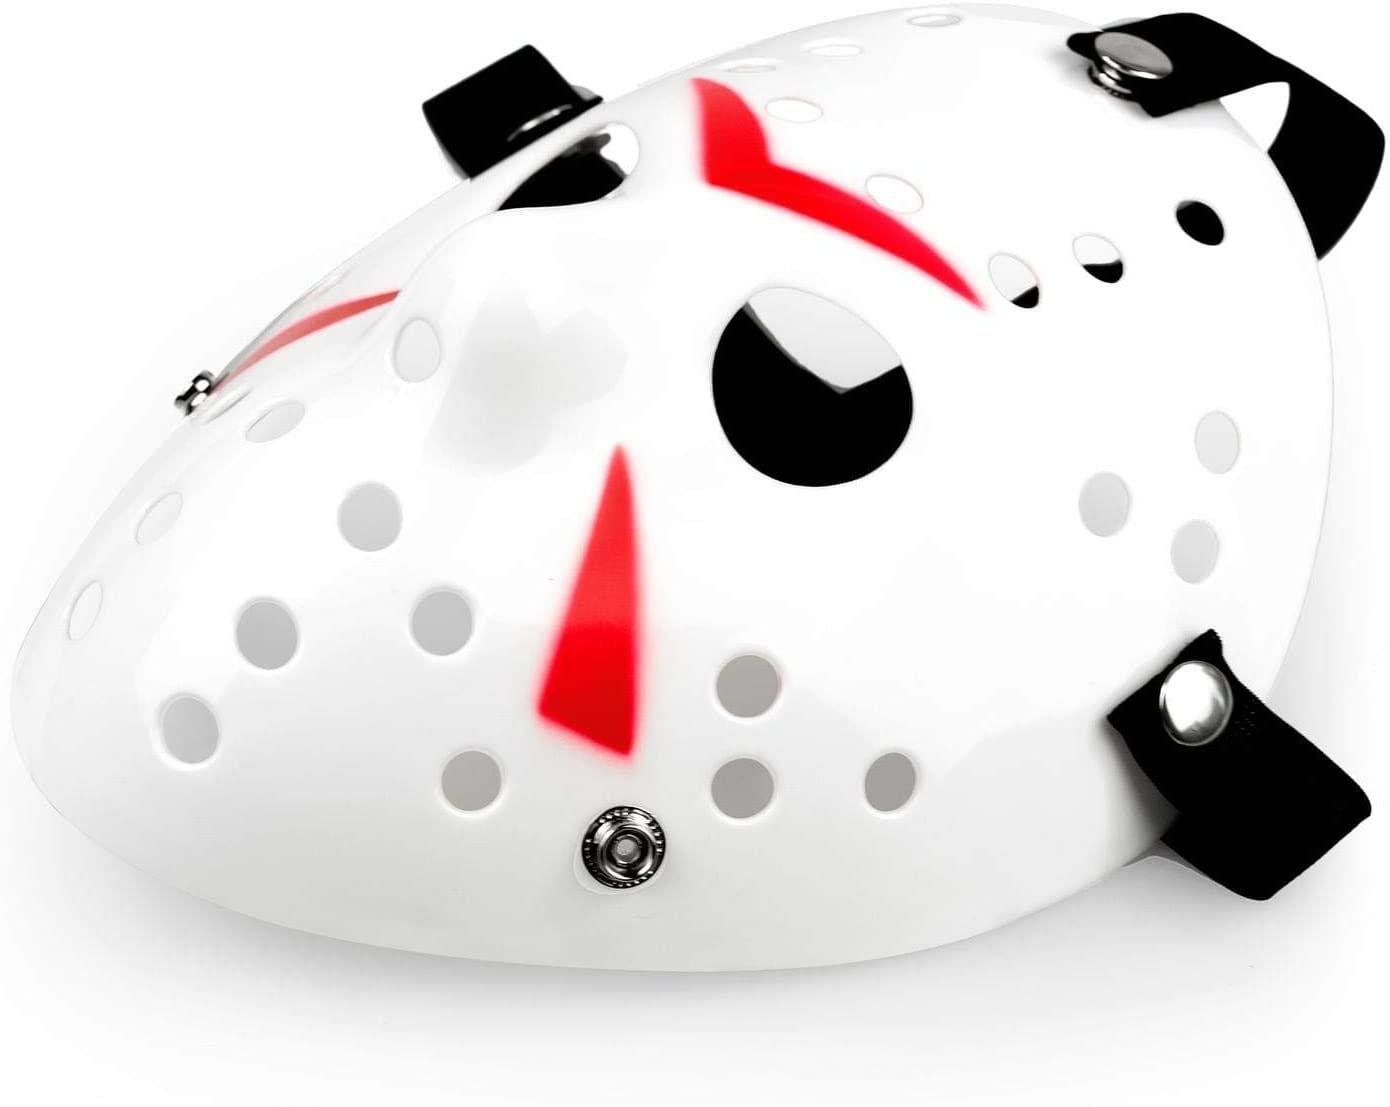 CLZ192 Beyaz Renk Kırmızı Çizgili Tam Yüz Hokey Jason Maskesi Hannibal Maskesi (4172)